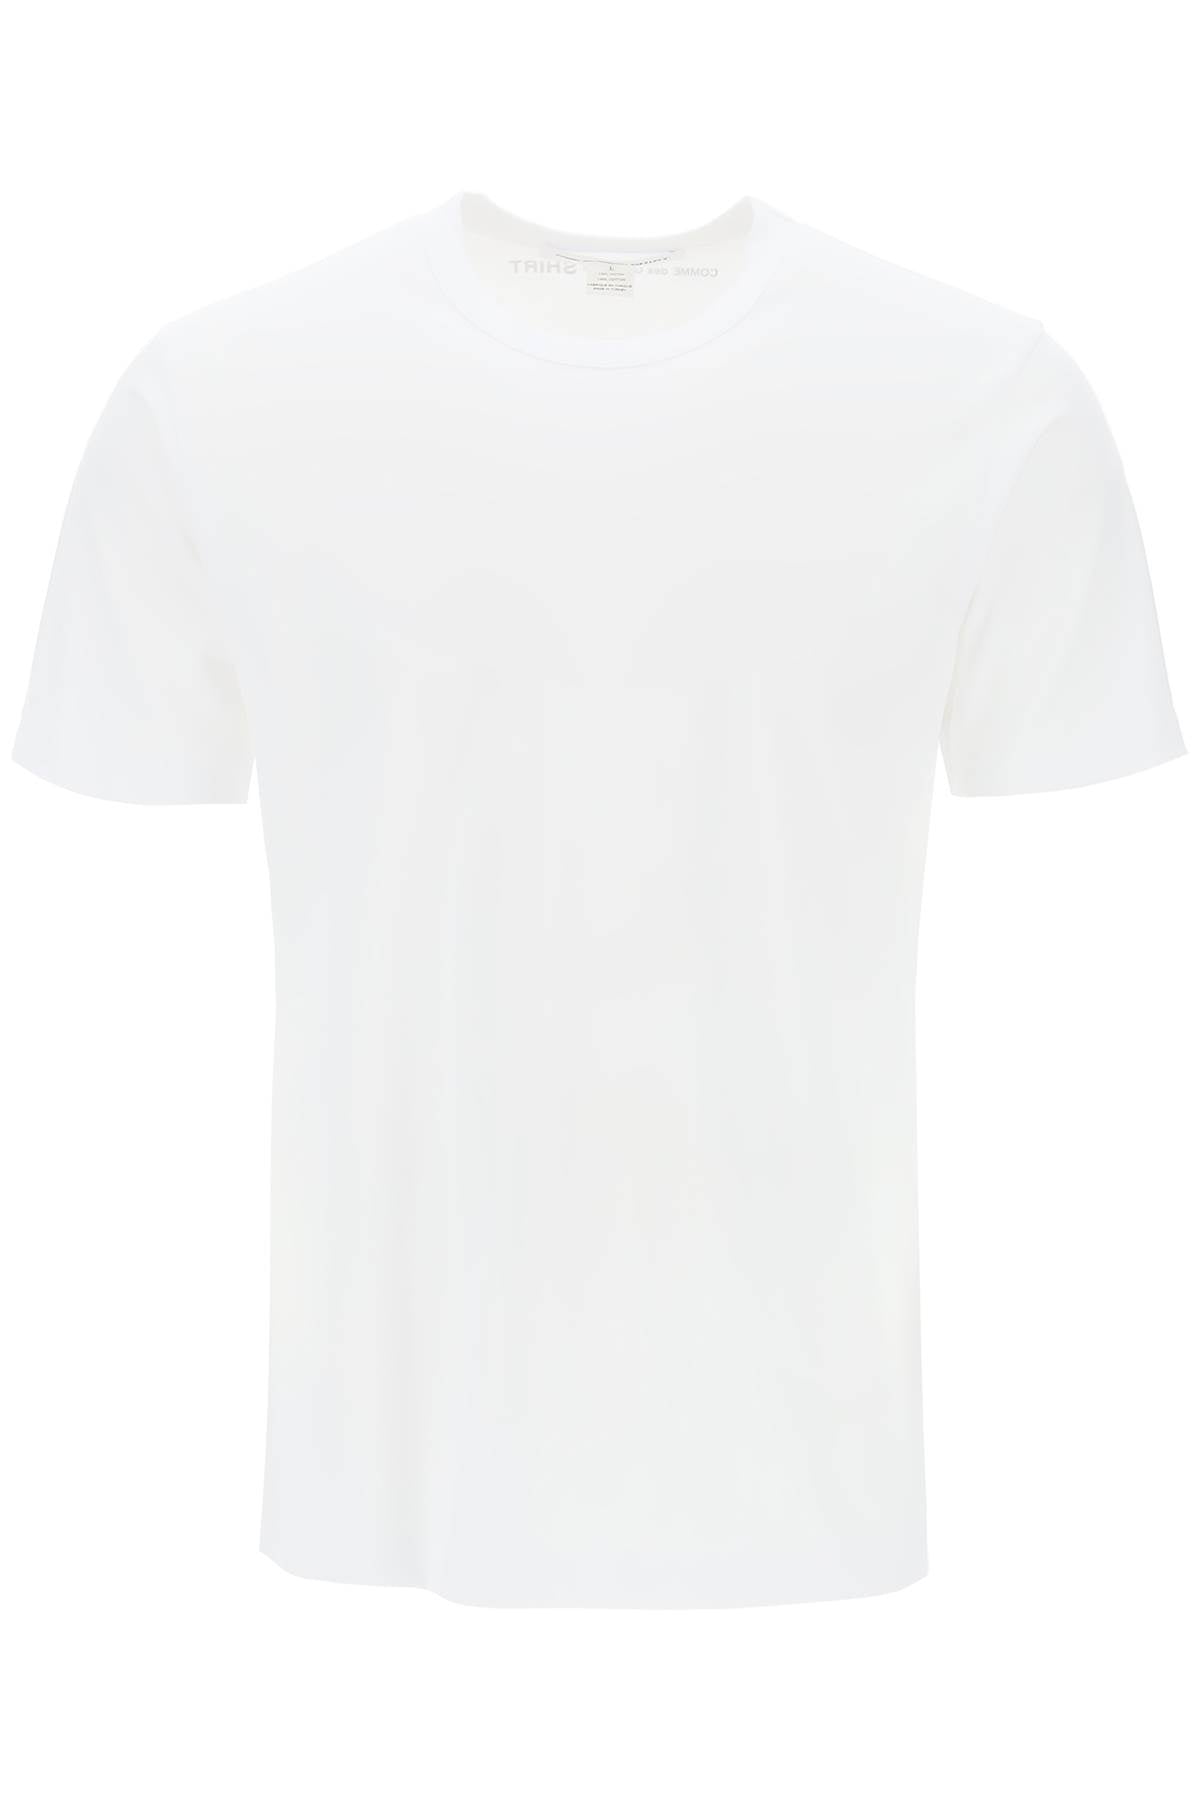 logo print t-shirt FM T011 S24 WHITE